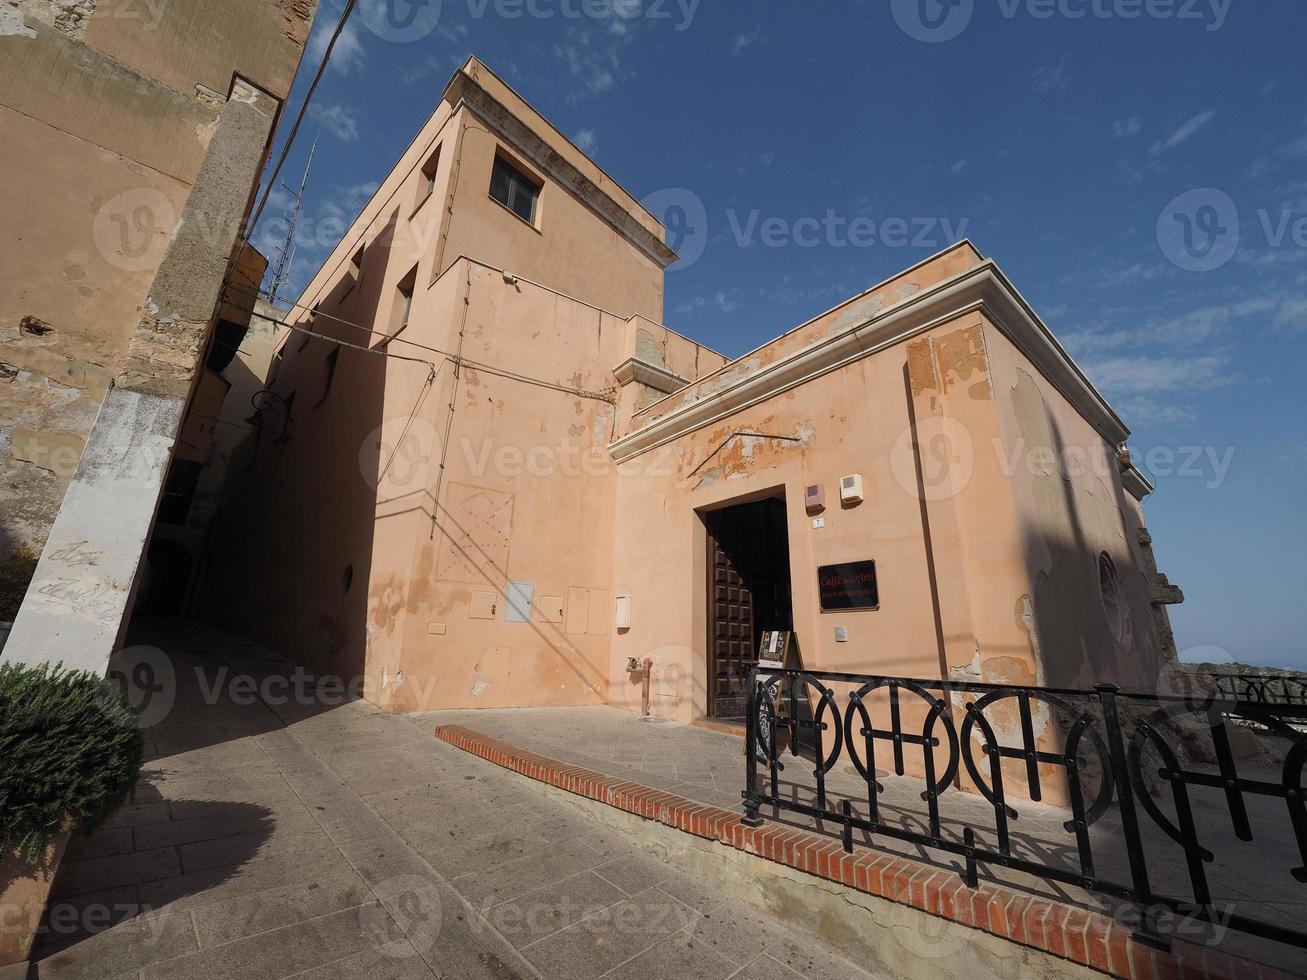 Casteddu meaning Castle quarter in Cagliari photo